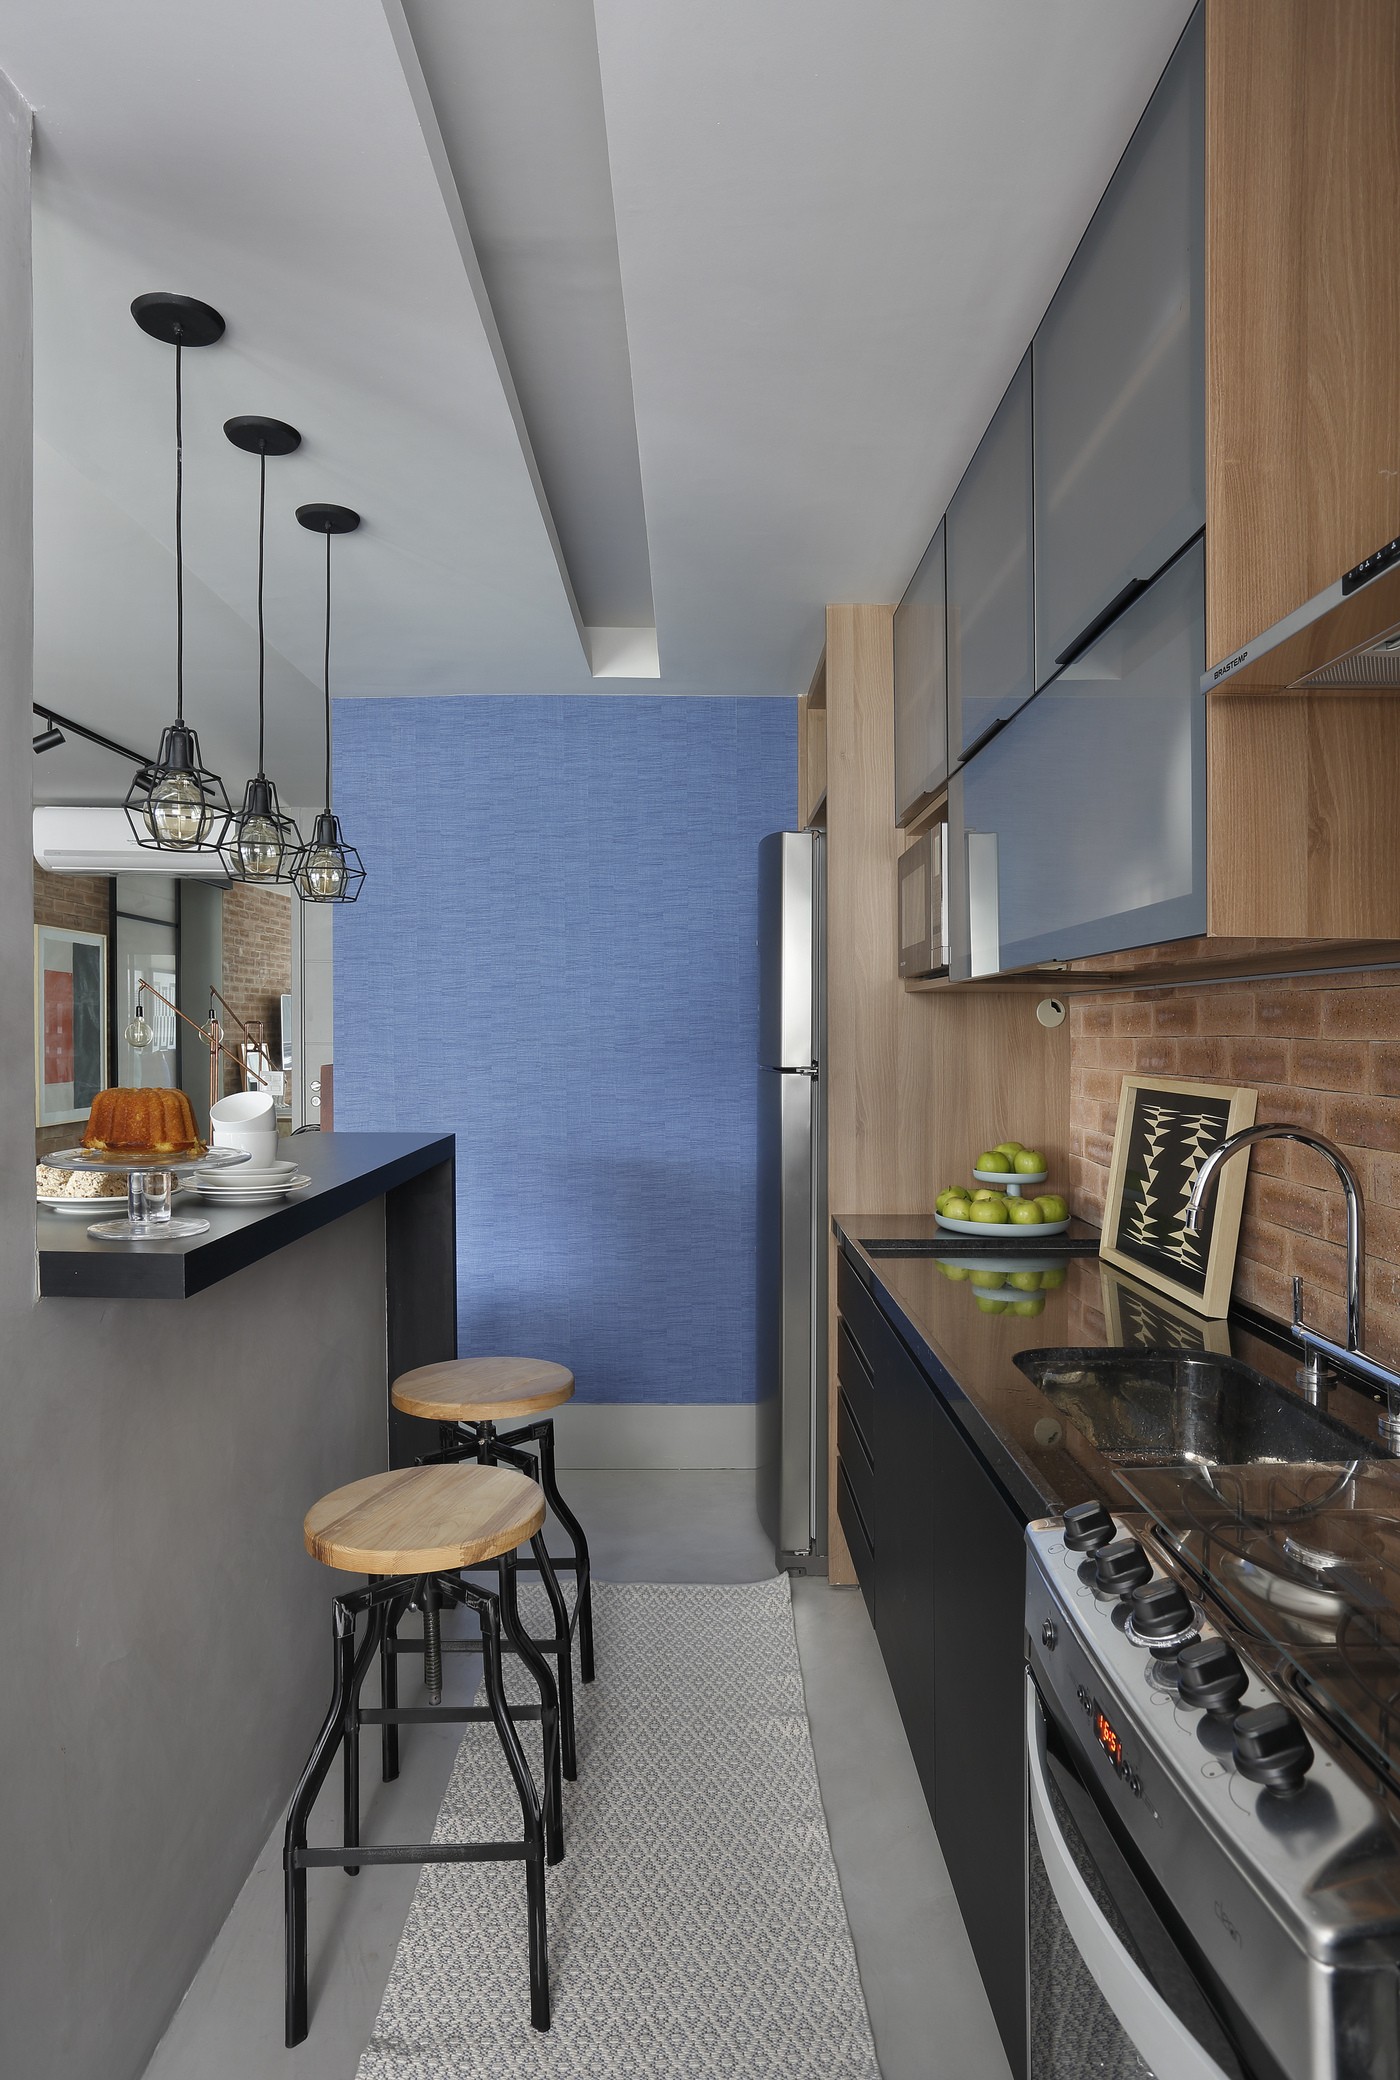 Décor do dia: papel de parede azul e tijolinhos são os destaques desta cozinha aberta (Foto: Denilson Machado/MCA Estúdio)